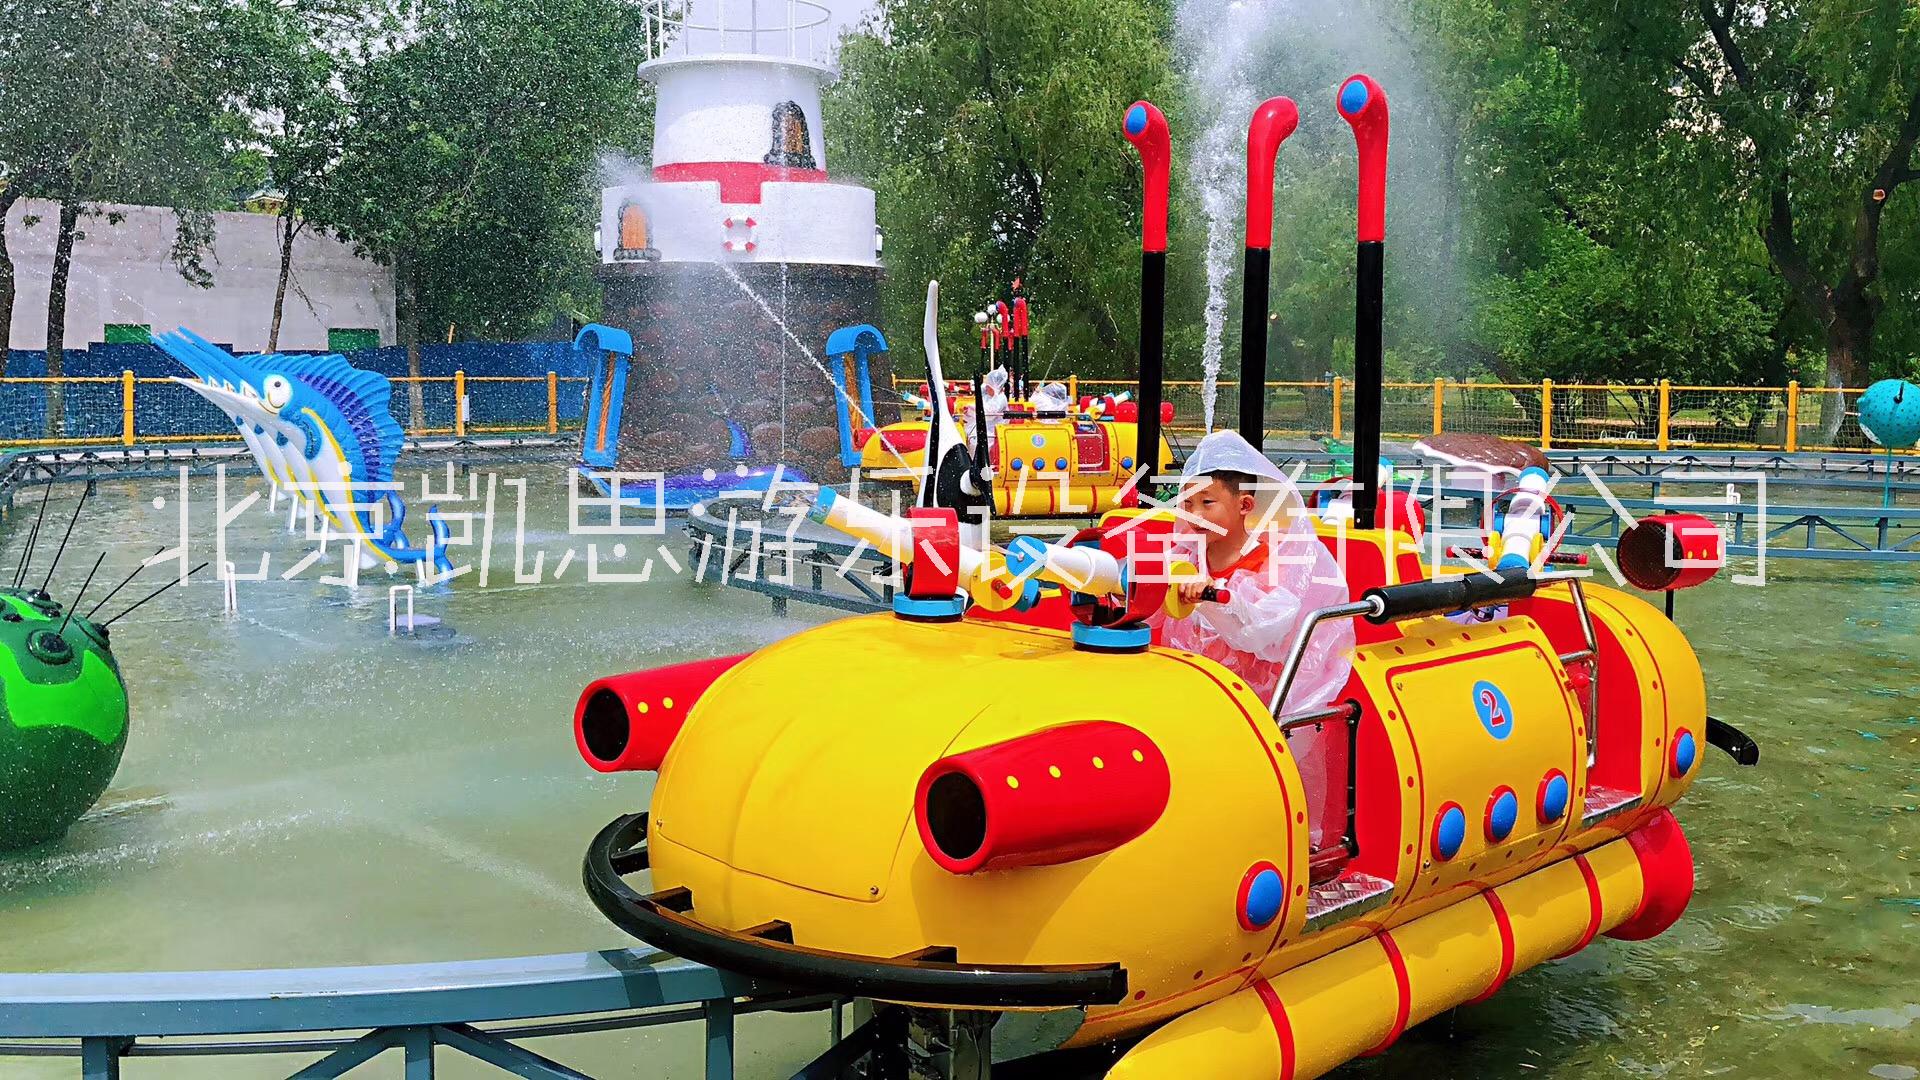 儿童爬山车超级大摆锤儿童旋转木马超级水战游乐设备儿童水上乐园设施图片